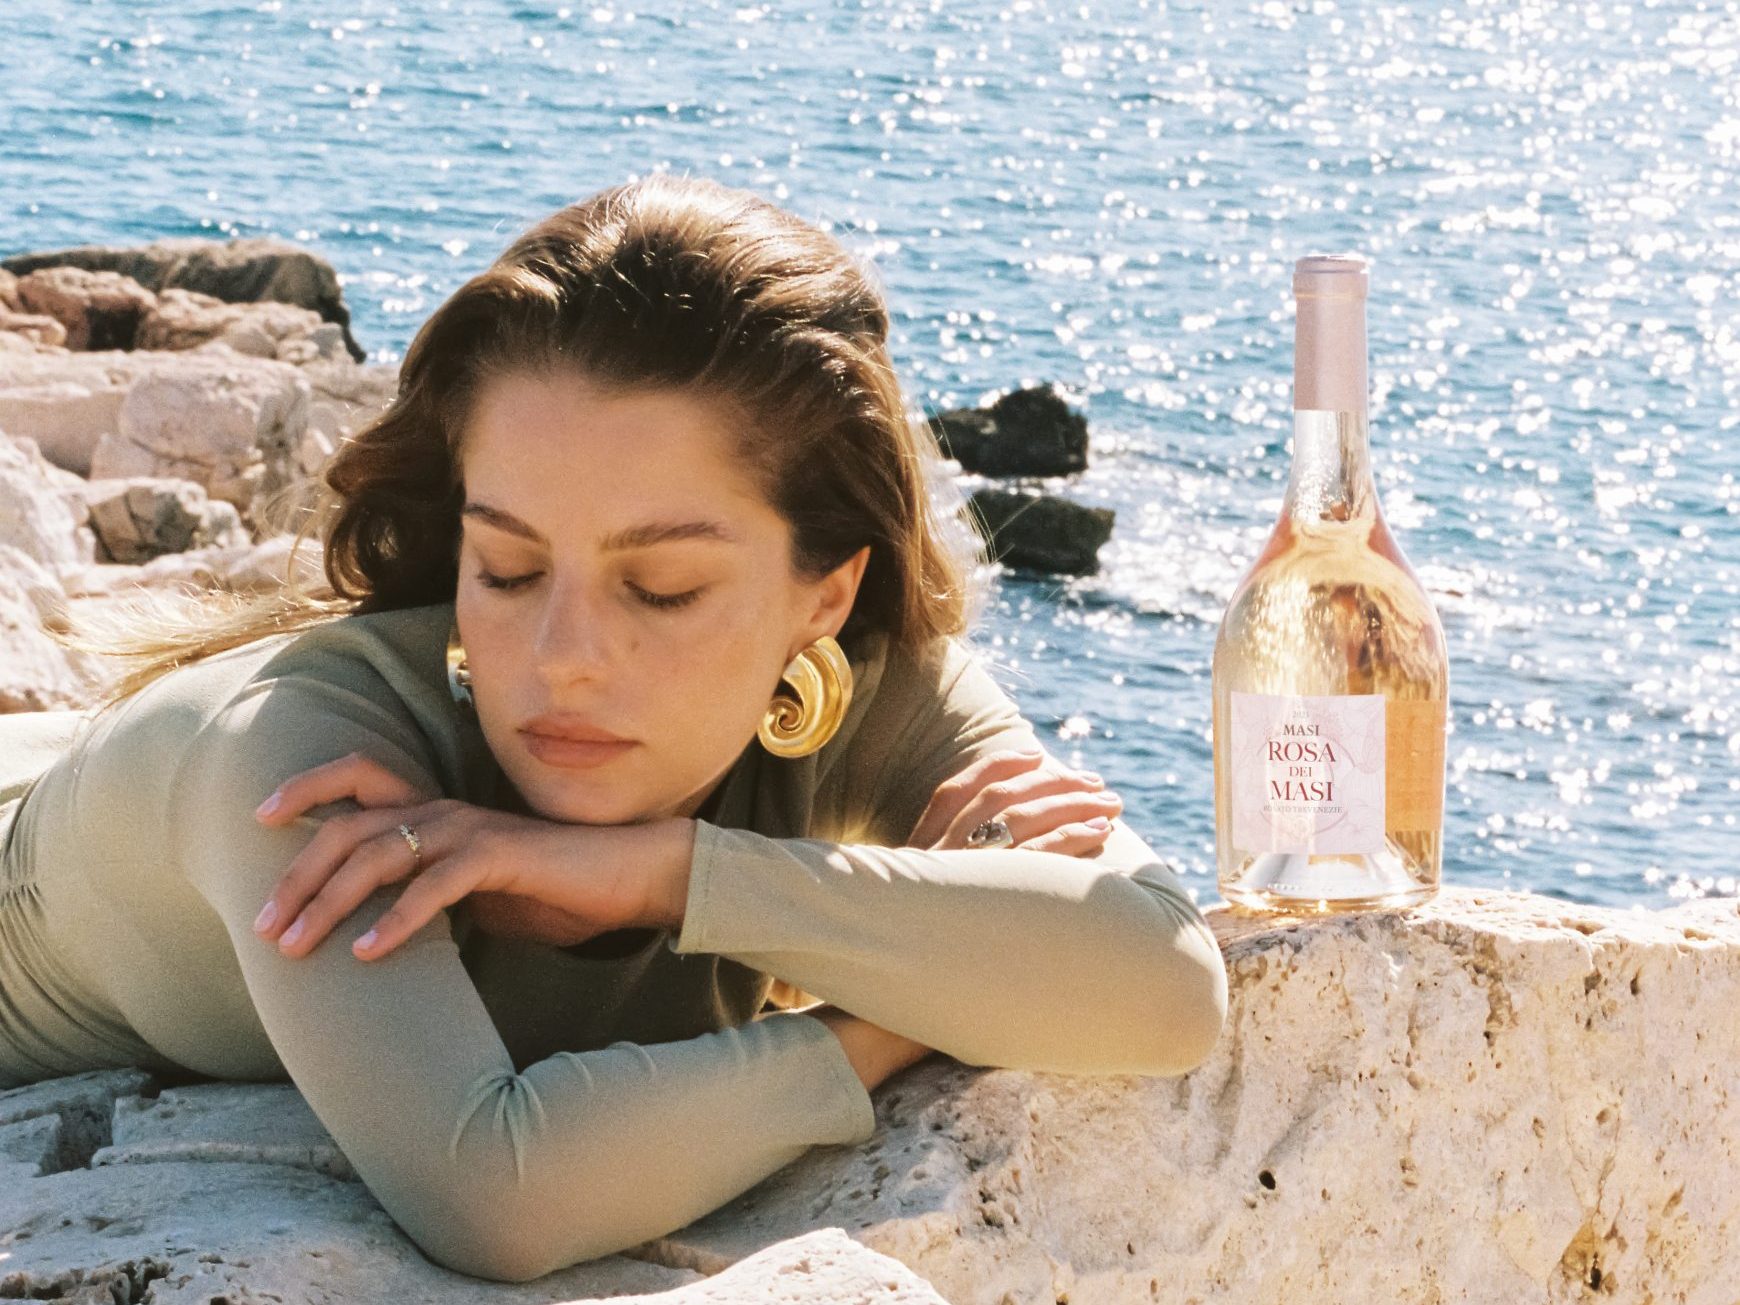 Une femme portant un haut vert se repose sur des rochers blancs au bord de la mer. Une bouteille de Rosa dei Masi est posée sur les rochers à côté d'elle.